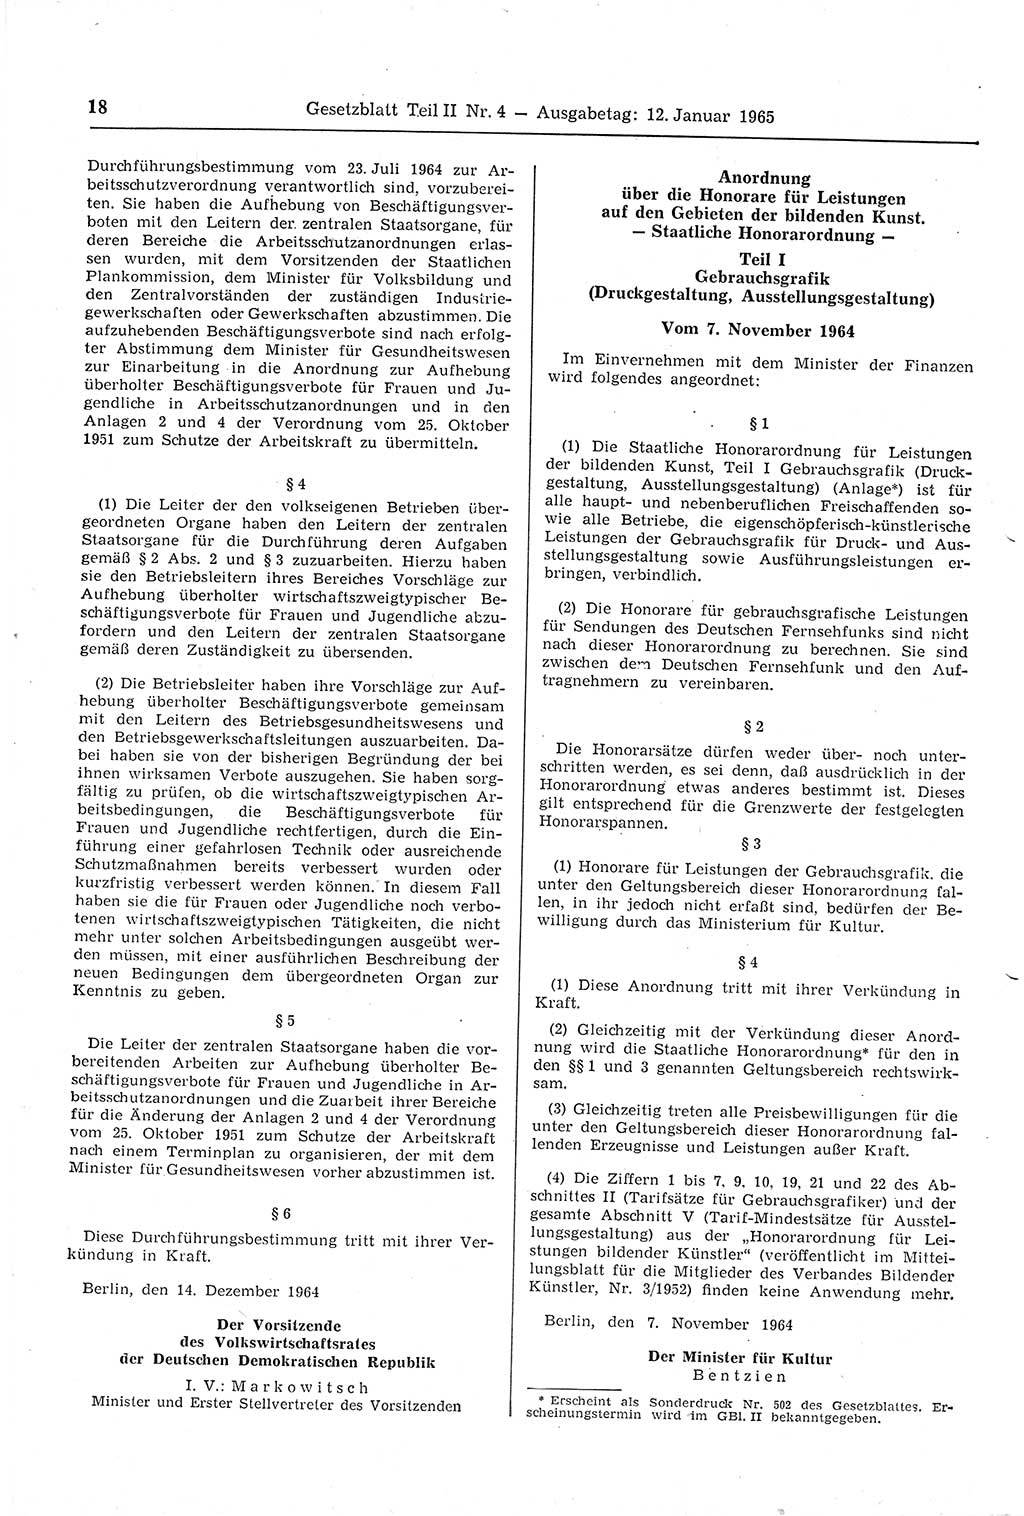 Gesetzblatt (GBl.) der Deutschen Demokratischen Republik (DDR) Teil ⅠⅠ 1965, Seite 18 (GBl. DDR ⅠⅠ 1965, S. 18)